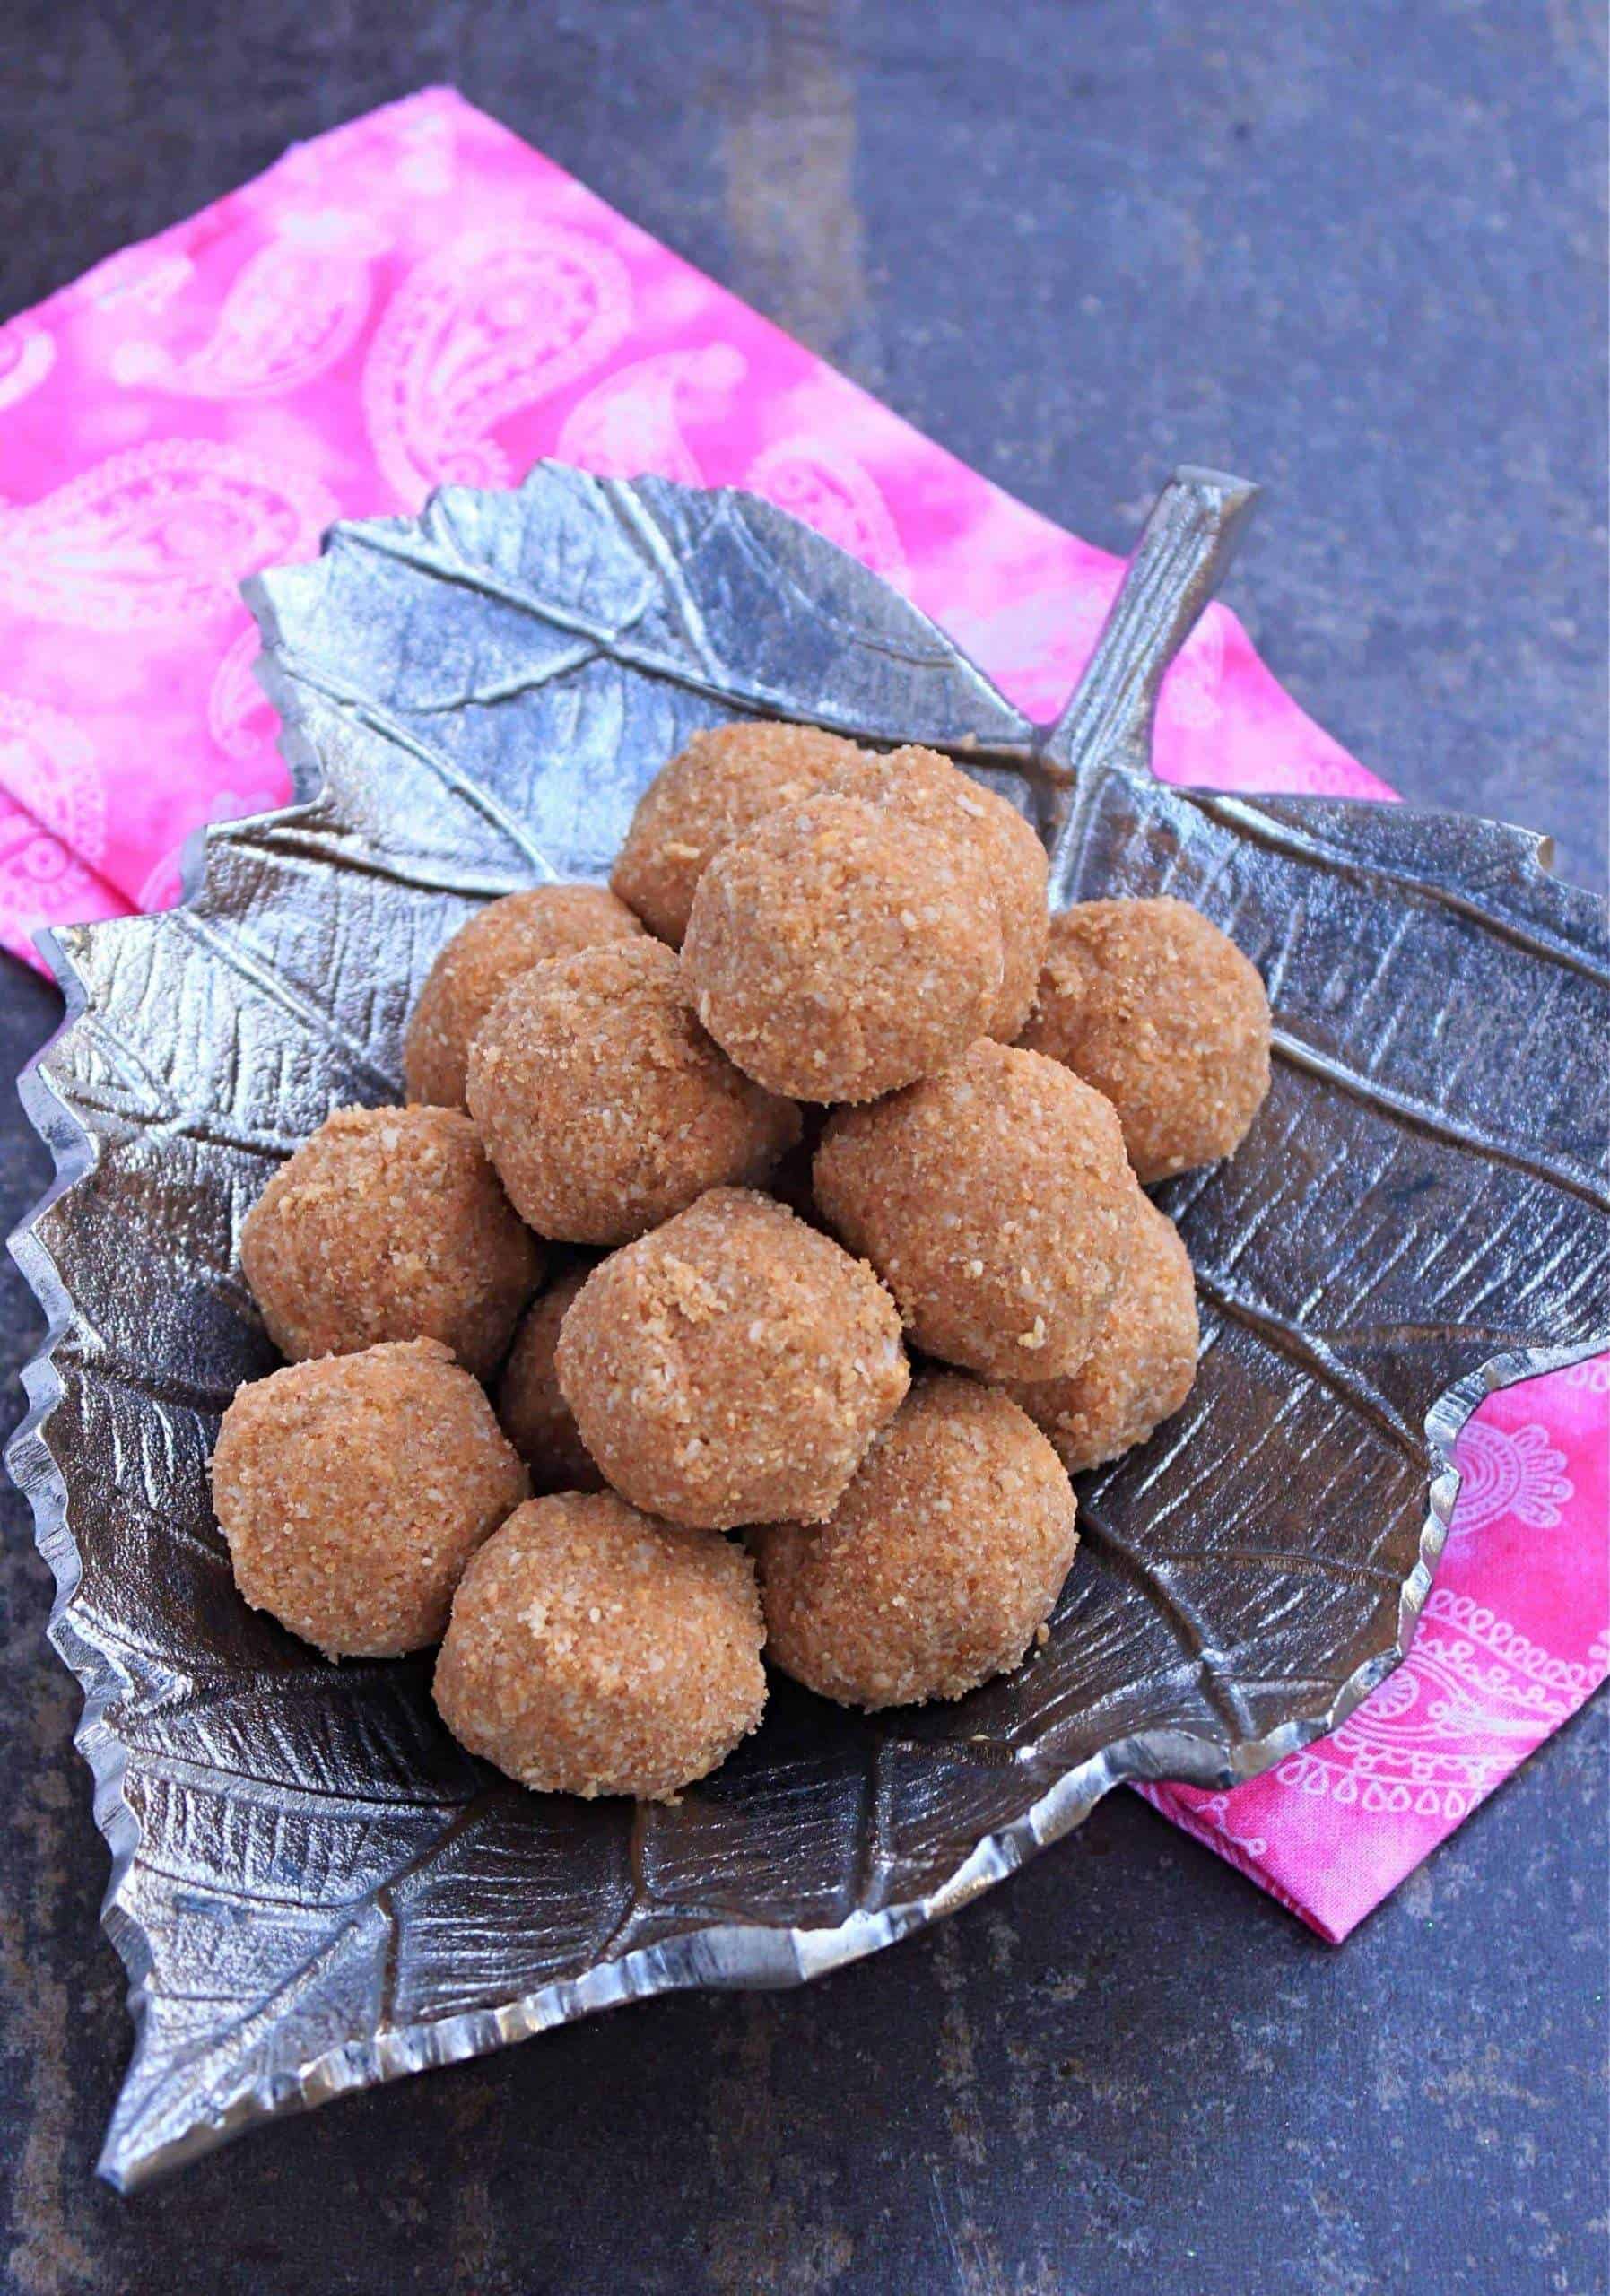 Kerala Style Cashew Rice Ball Final product